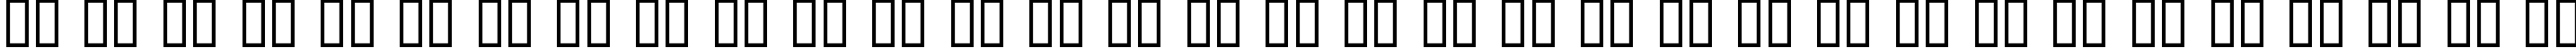 Пример написания русского алфавита шрифтом Fontdinerdotcom Luvable